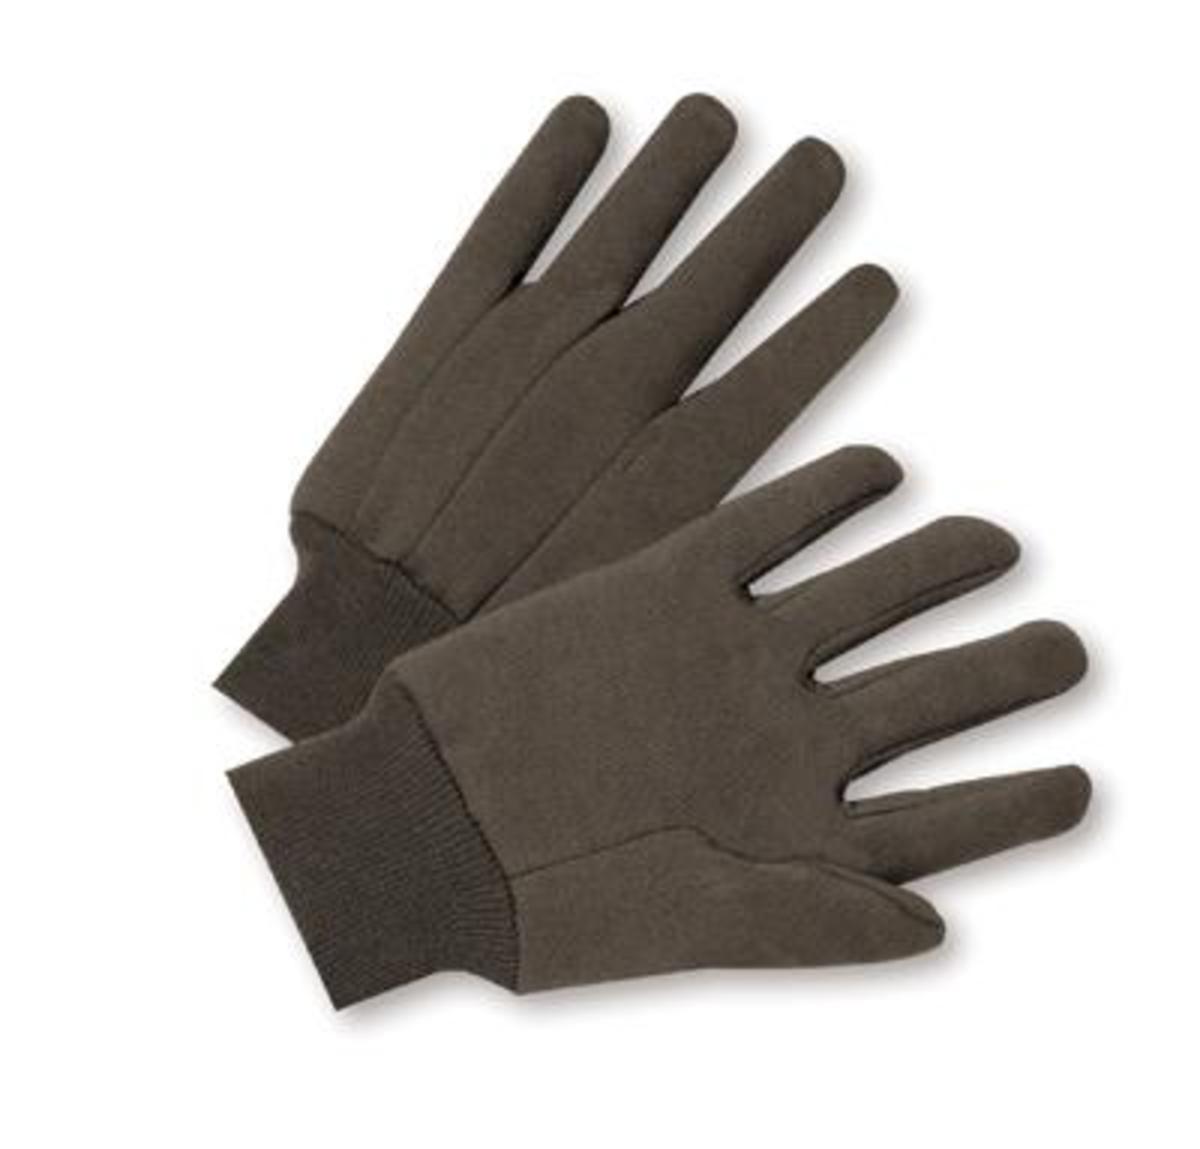 Cotton Day Gloves - Regina